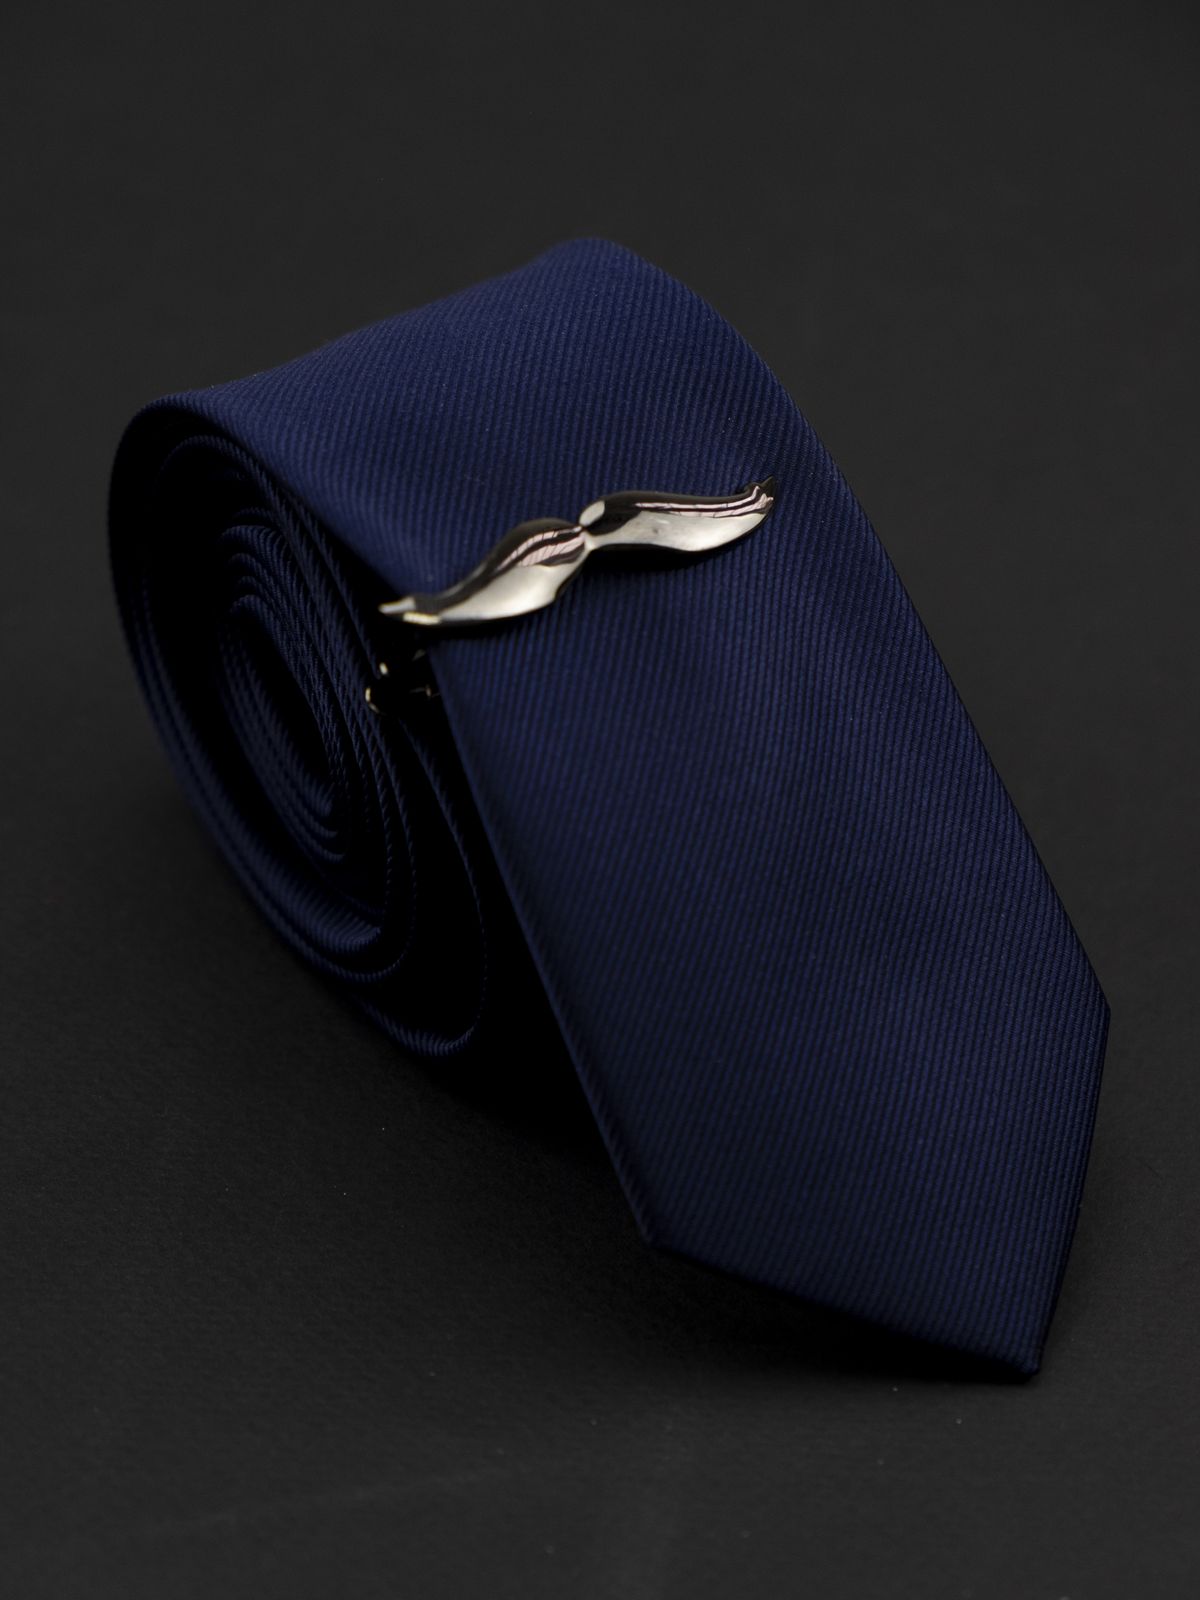 Зажим для галстука Усы темно-серые купить. Состав: Ювелирная сталь 316L, Цвет: Темно-серый, Габариты: 55 мм х 10 мм, Вес: 10 гр.; 